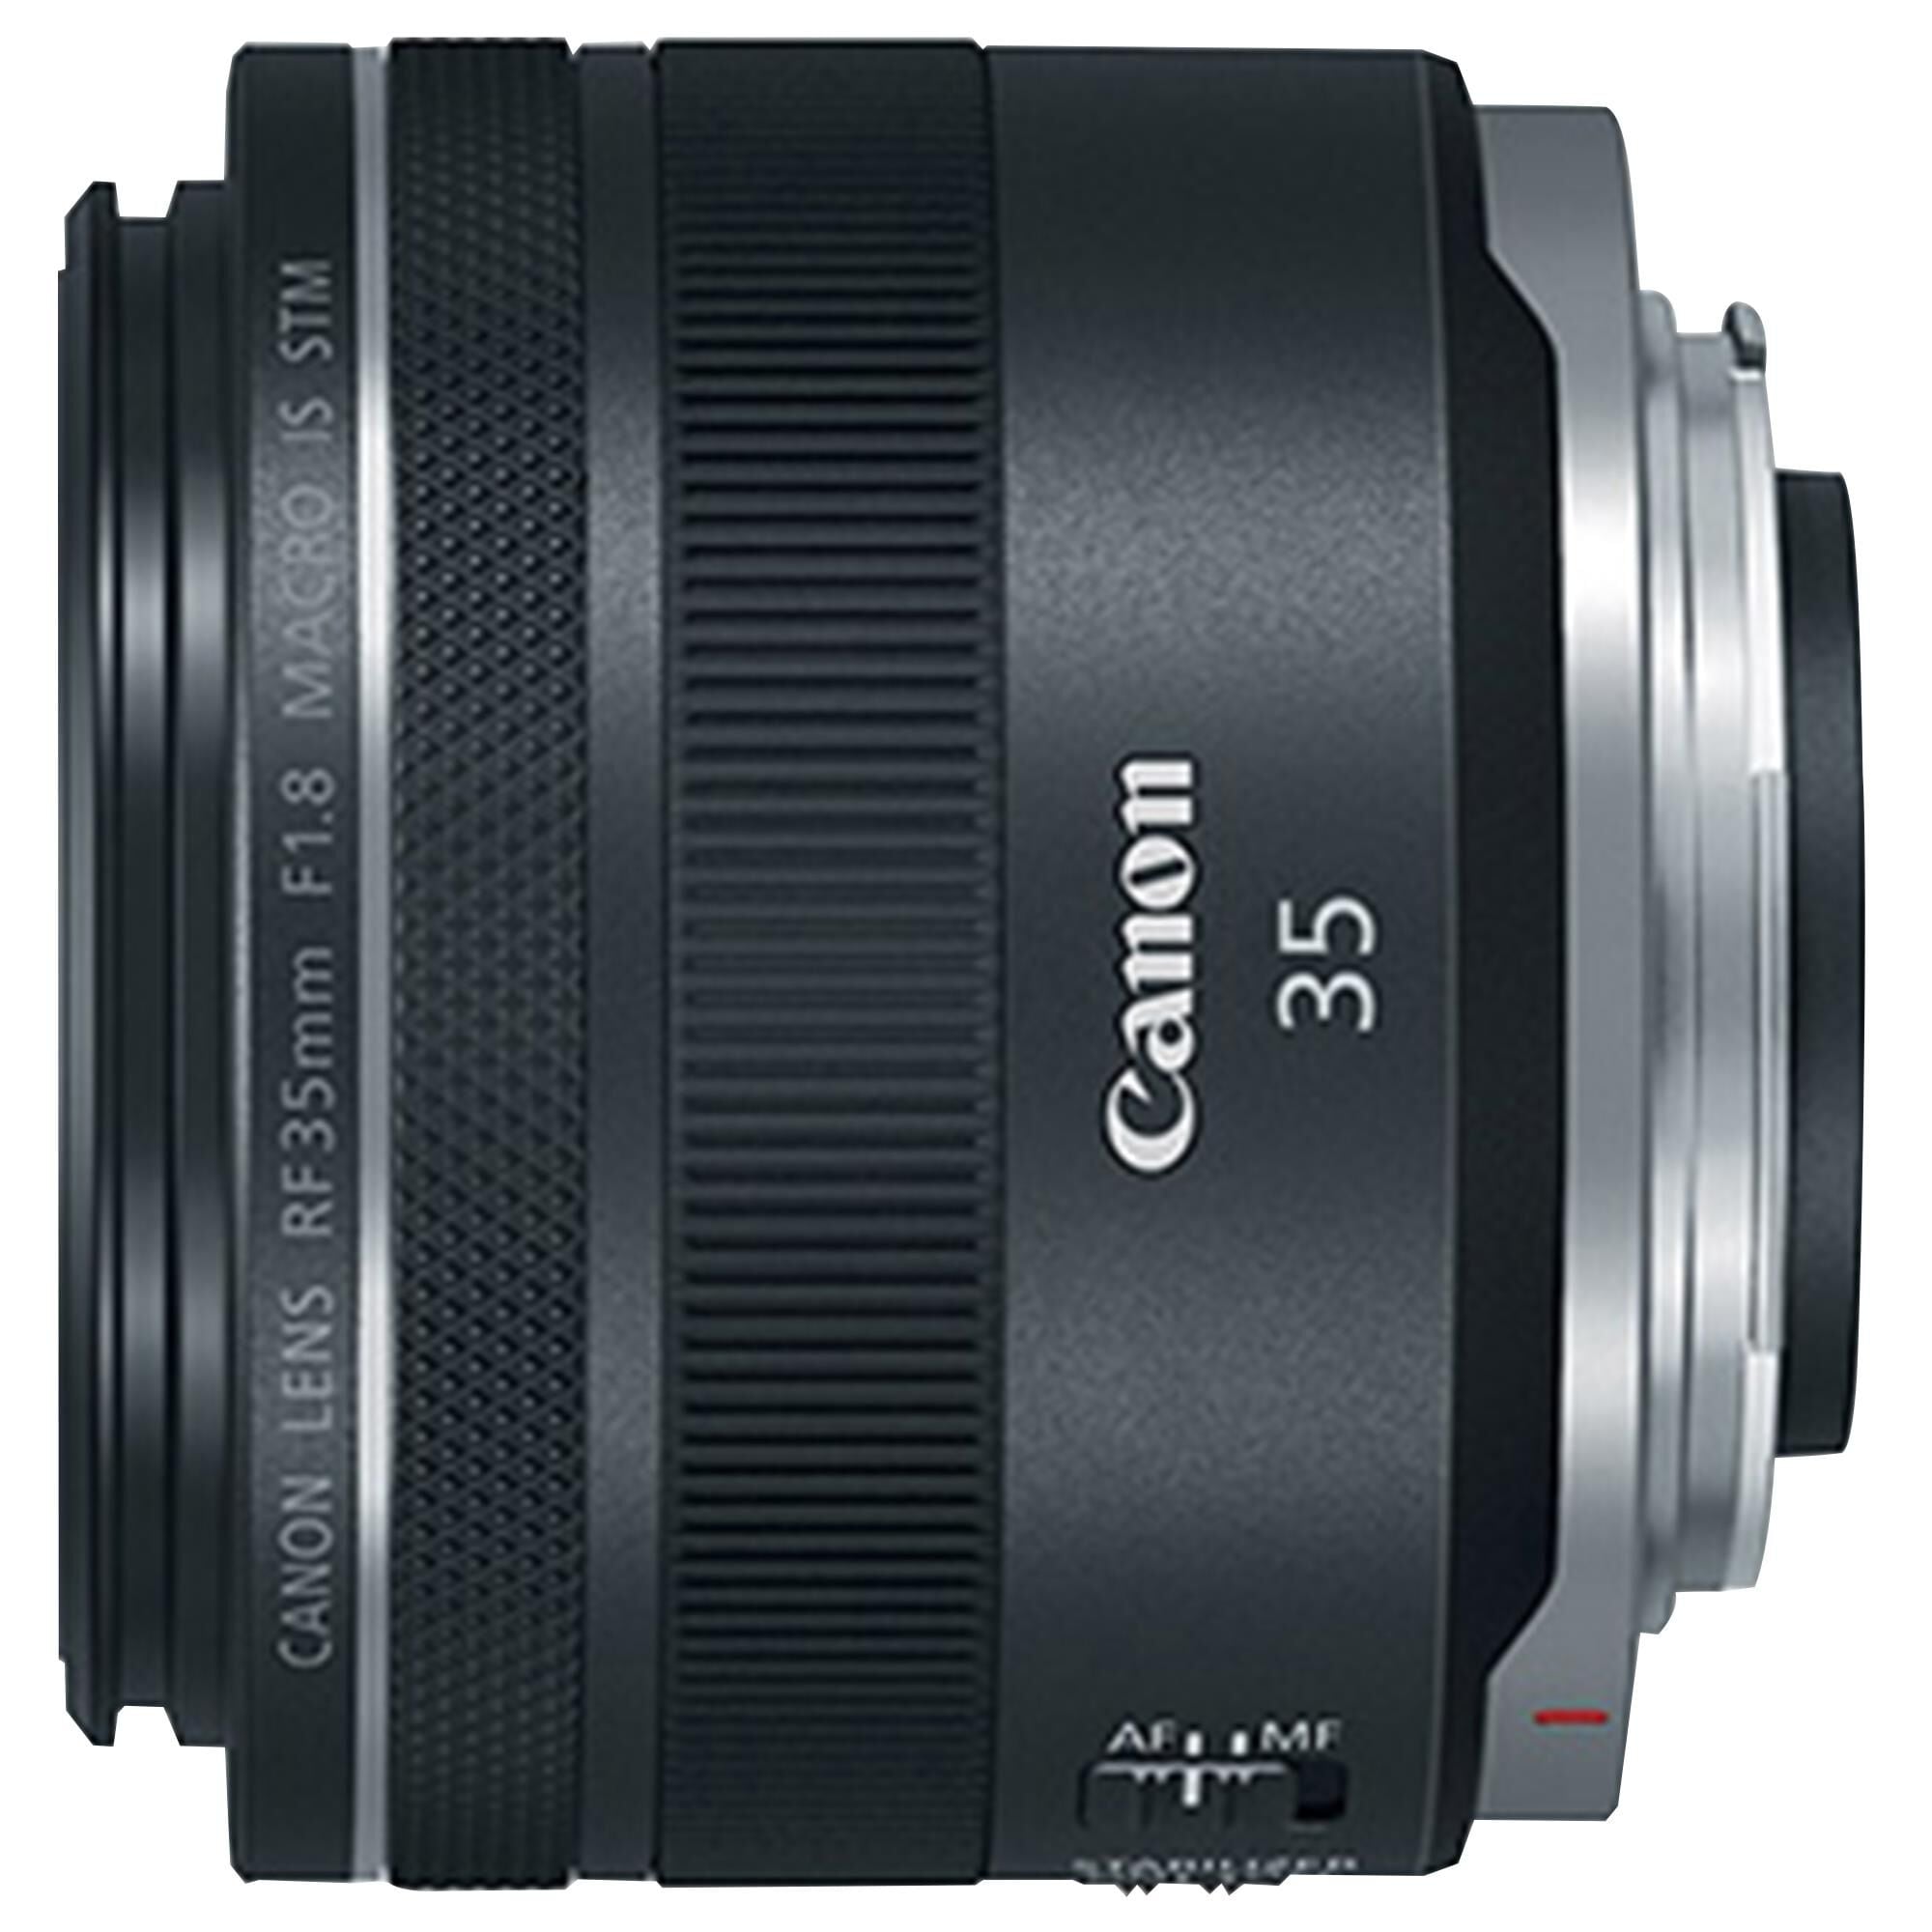 Canon RF 35mm f1.8 Macro IS STM Lens in Black | Nebraska Furniture Mart